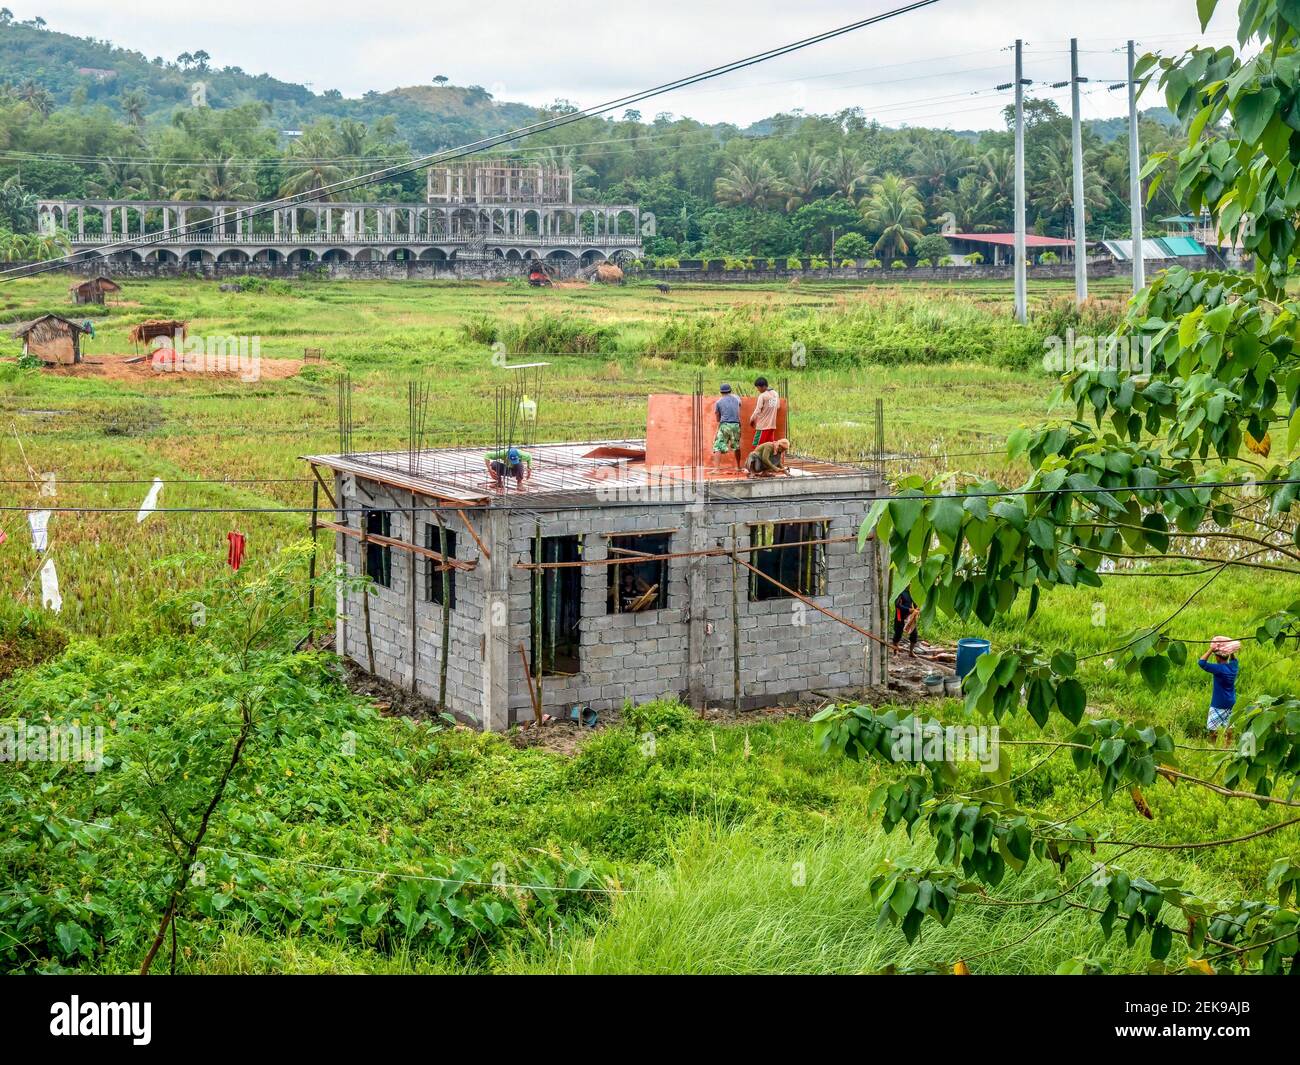 Puerto Galera, Philippines - 4 décembre 2018. Construction d'une maison en béton dans un ancien riz paddy, en raison de la croissance démographique et de l'expansion urbaine. Banque D'Images